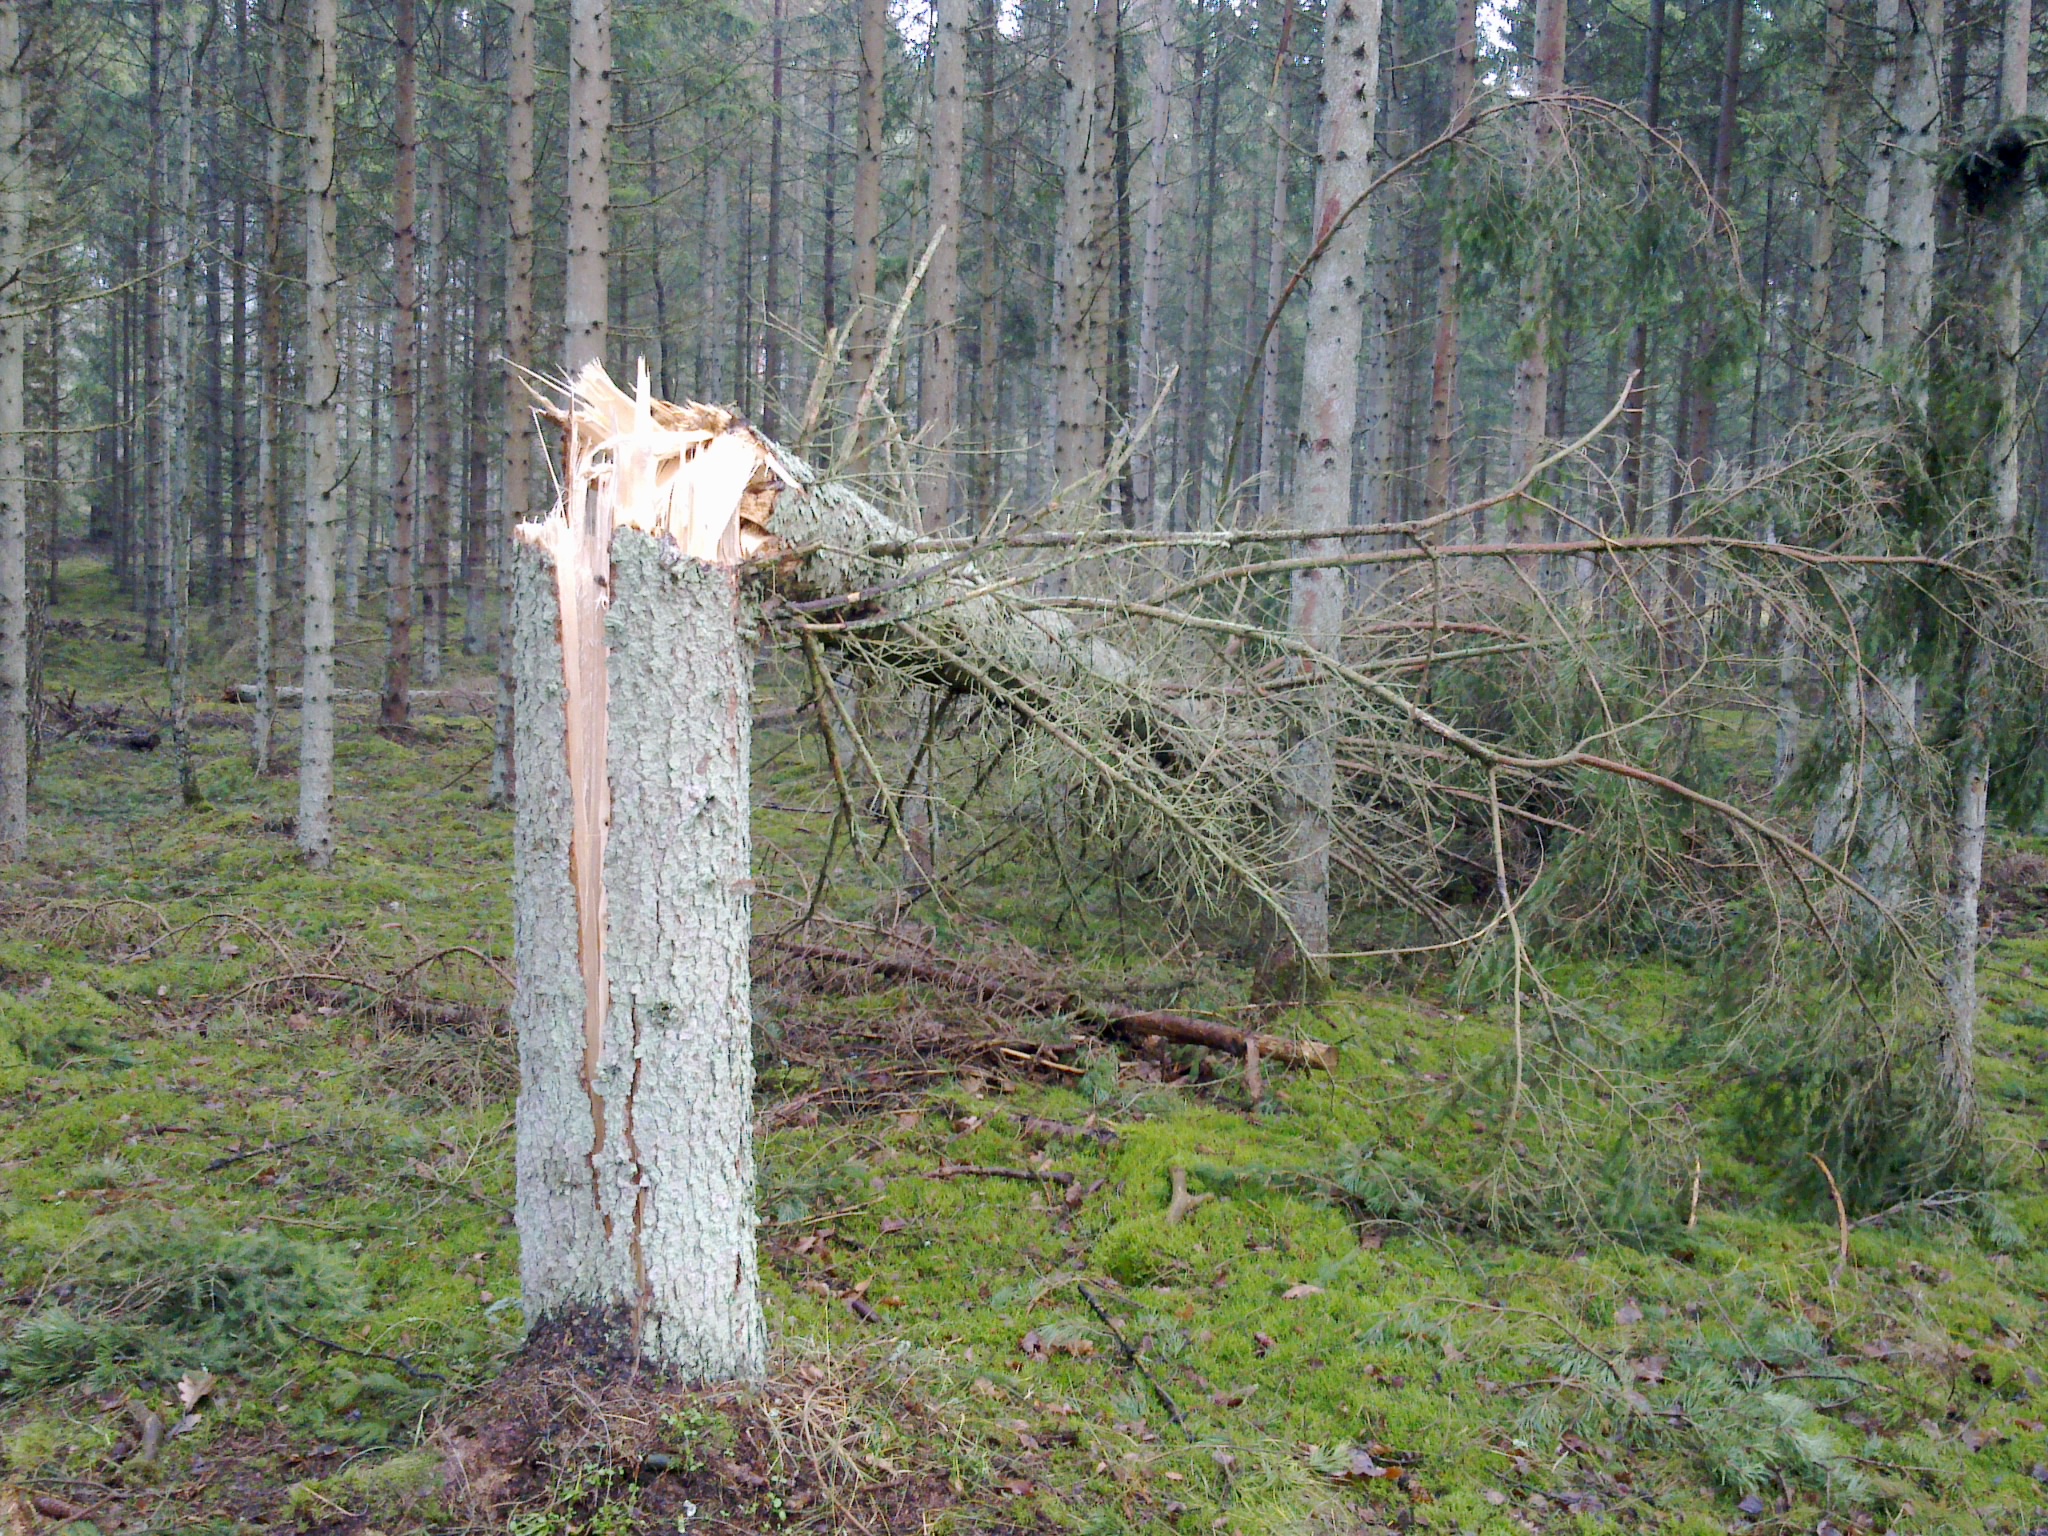 Splintret og knækket træ. Tisvilde Hegn efter stormen Bodil. Foto: Lars Rudolph ©